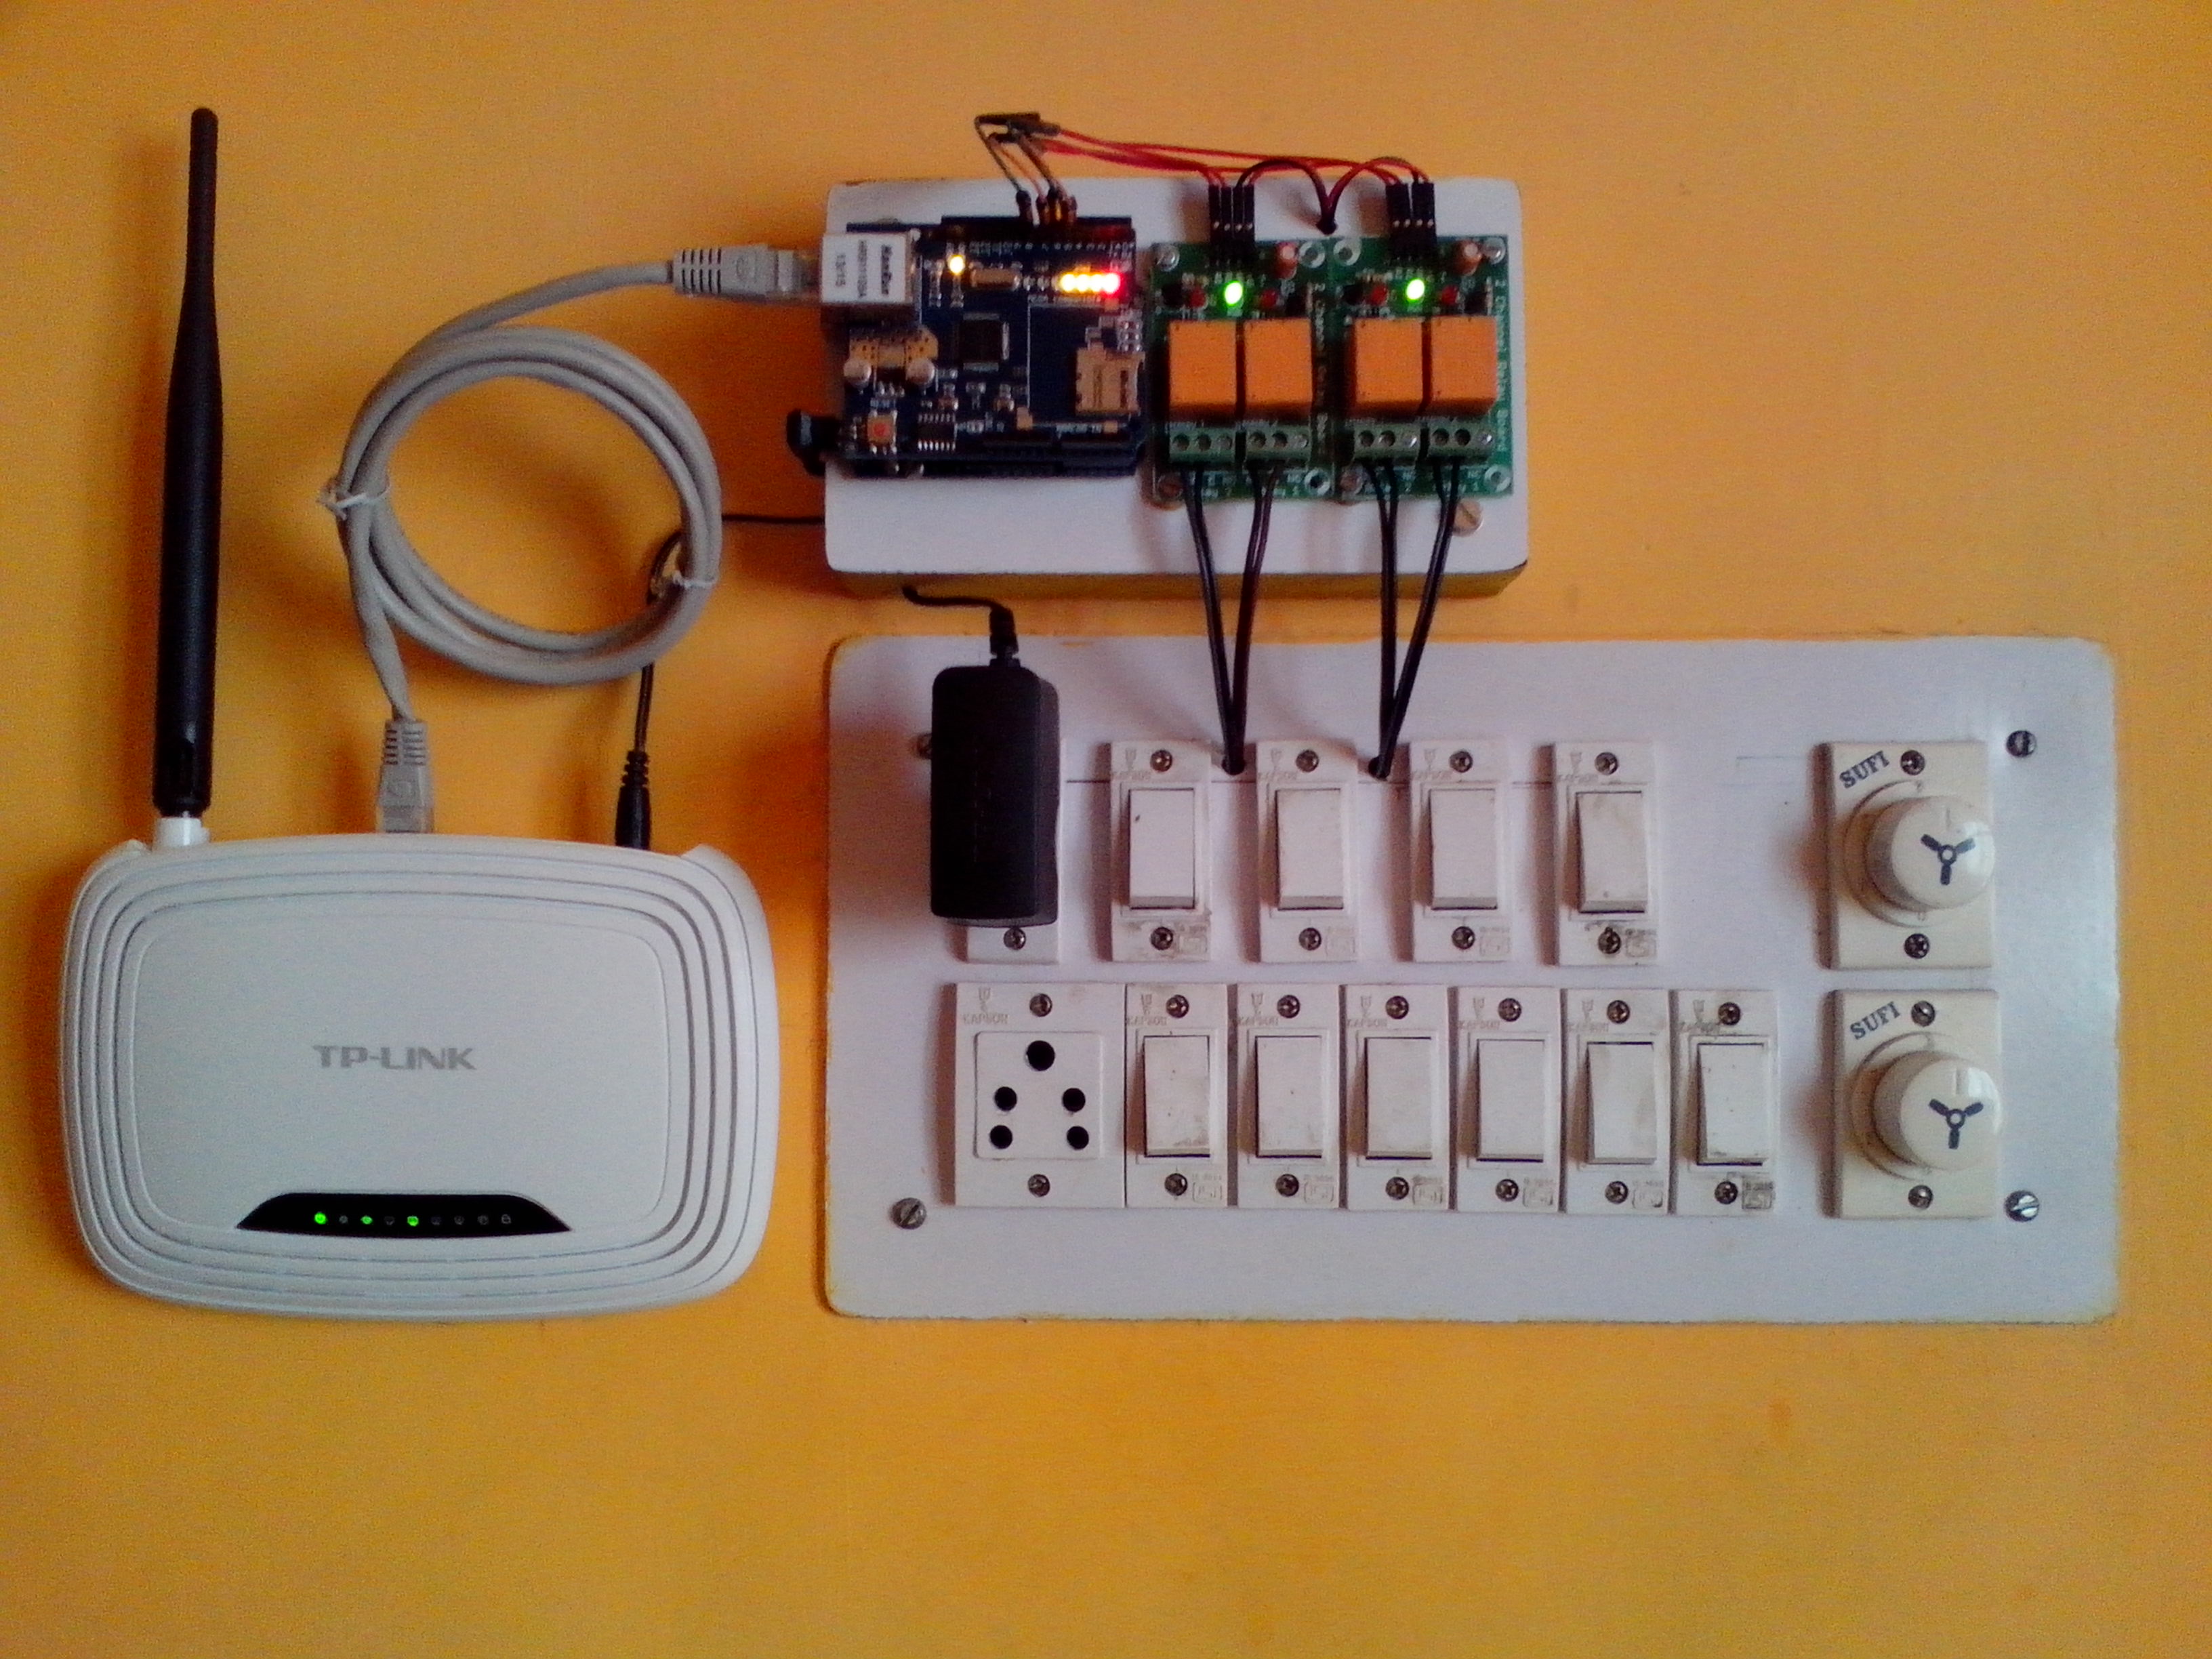 Điều khiển ánh sáng trong nhà bằng smartphone nhờ bo mạch arduino